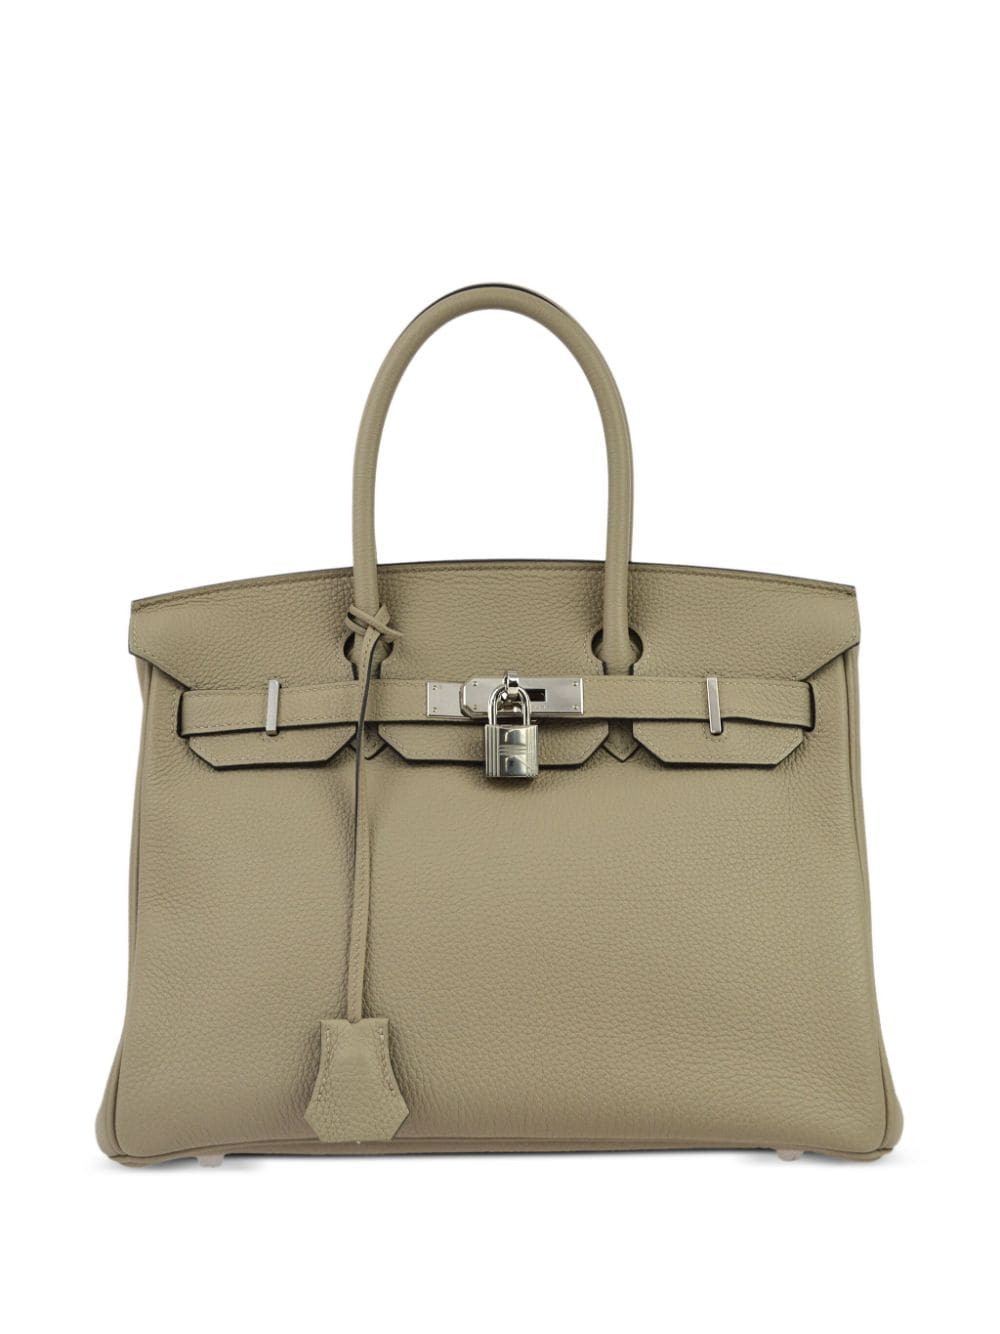 Hermès Pre-Owned 2018 Birkin 30 handbag - Neutrals von Hermès Pre-Owned